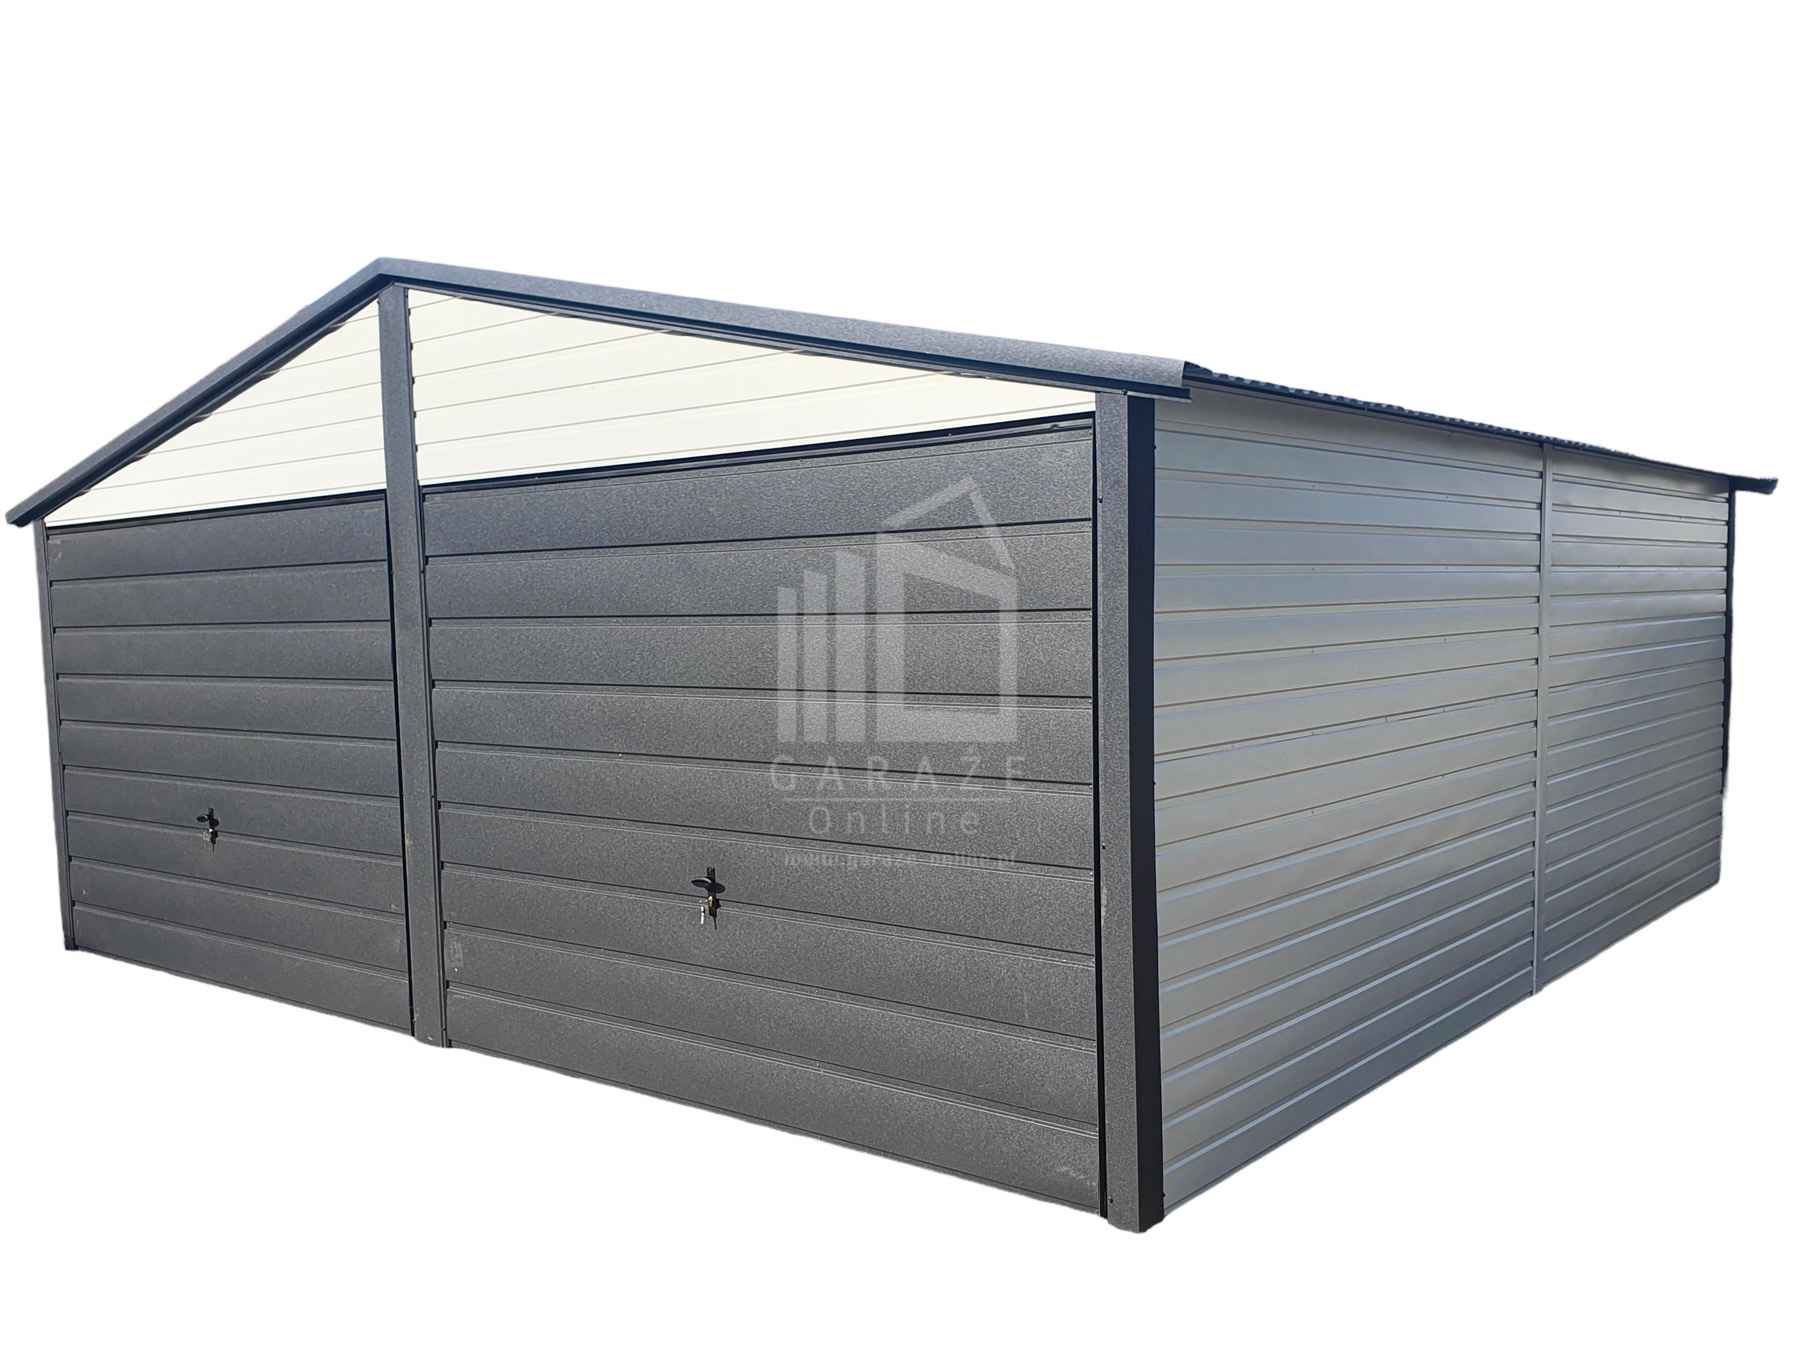 Garaż Blaszany 6x6 - 2x Brama - Antracyt + Biały dach dwuspadowy ID449 Cieszyn - zdjęcie 1